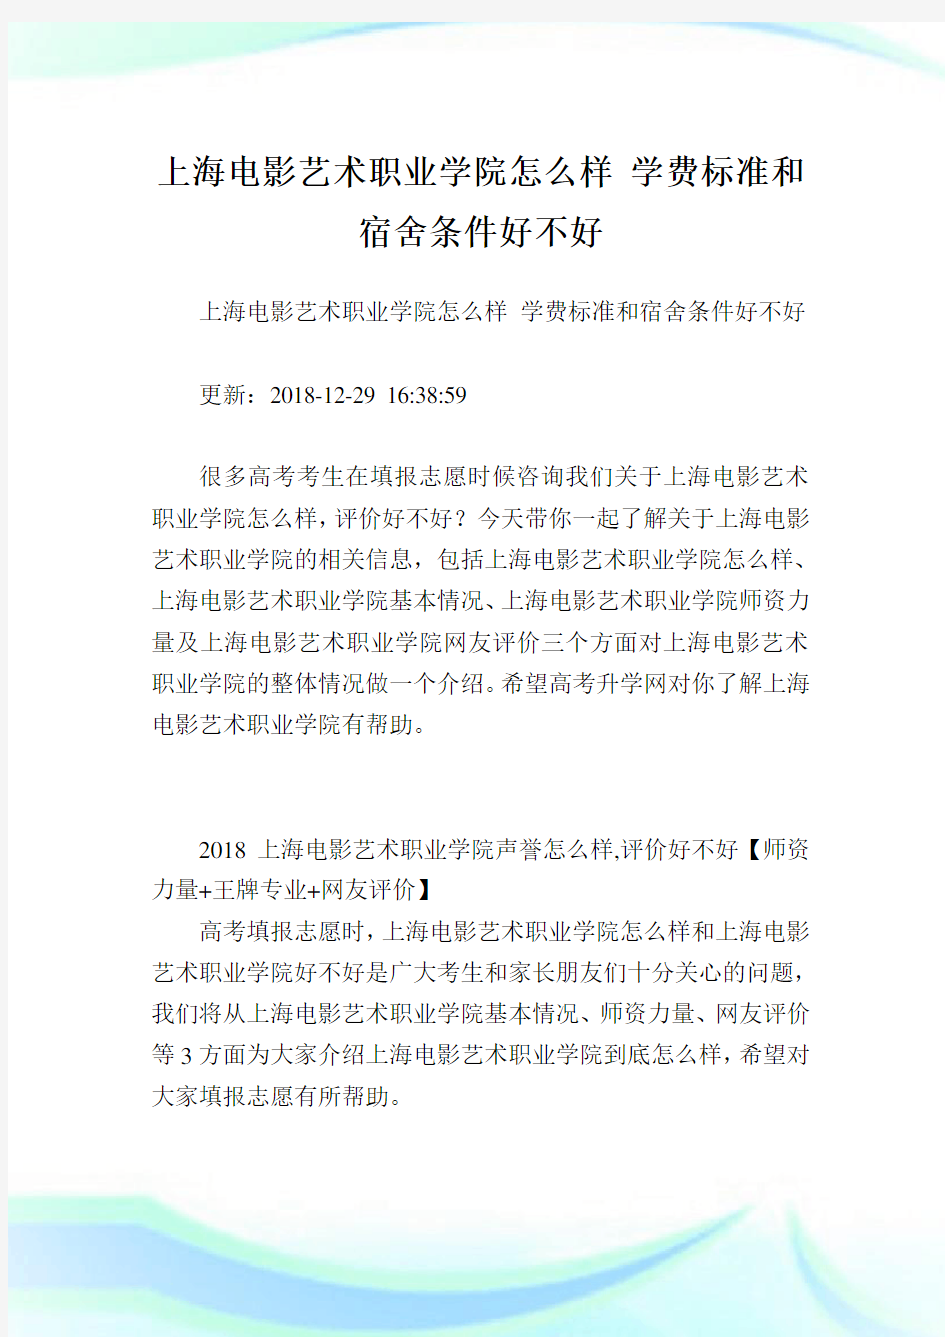 上海电影艺术职业学院怎么样学费标准和宿舍条件好不好.doc